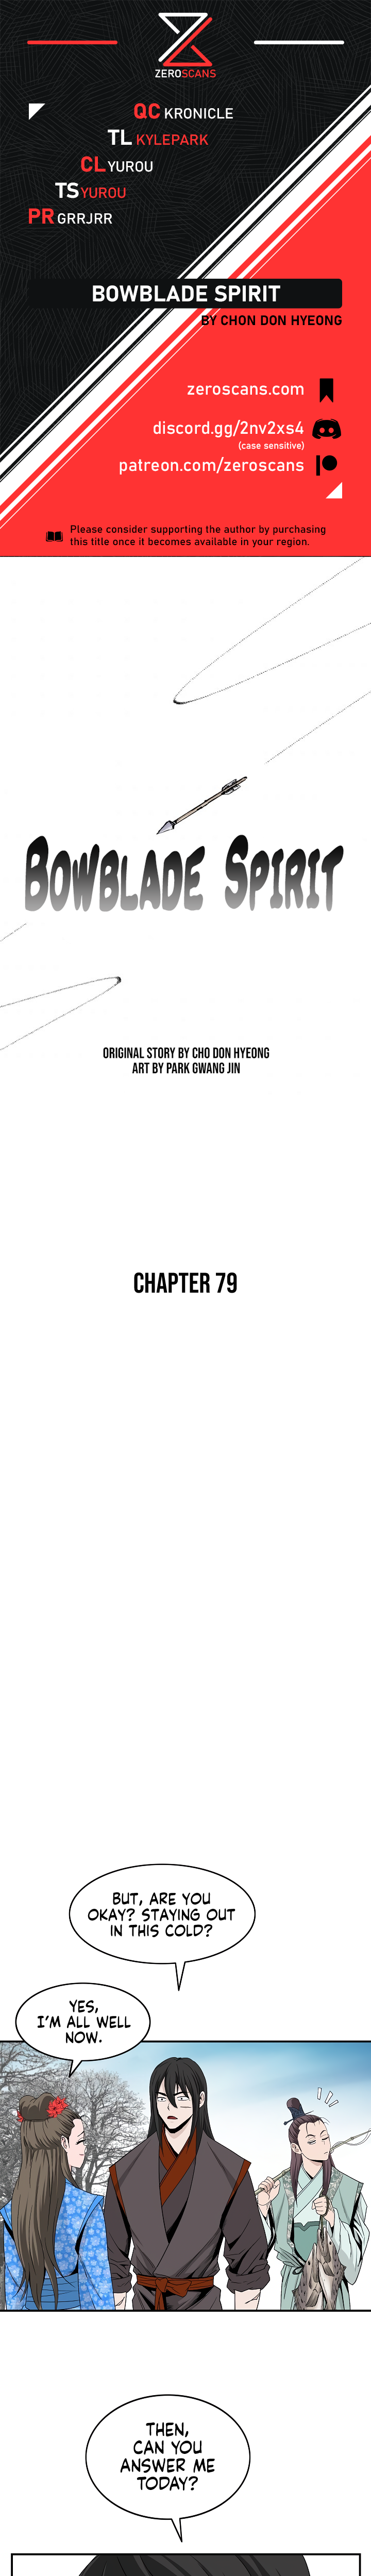 Bowblade Spirit - Chapter 7304 - Image 1